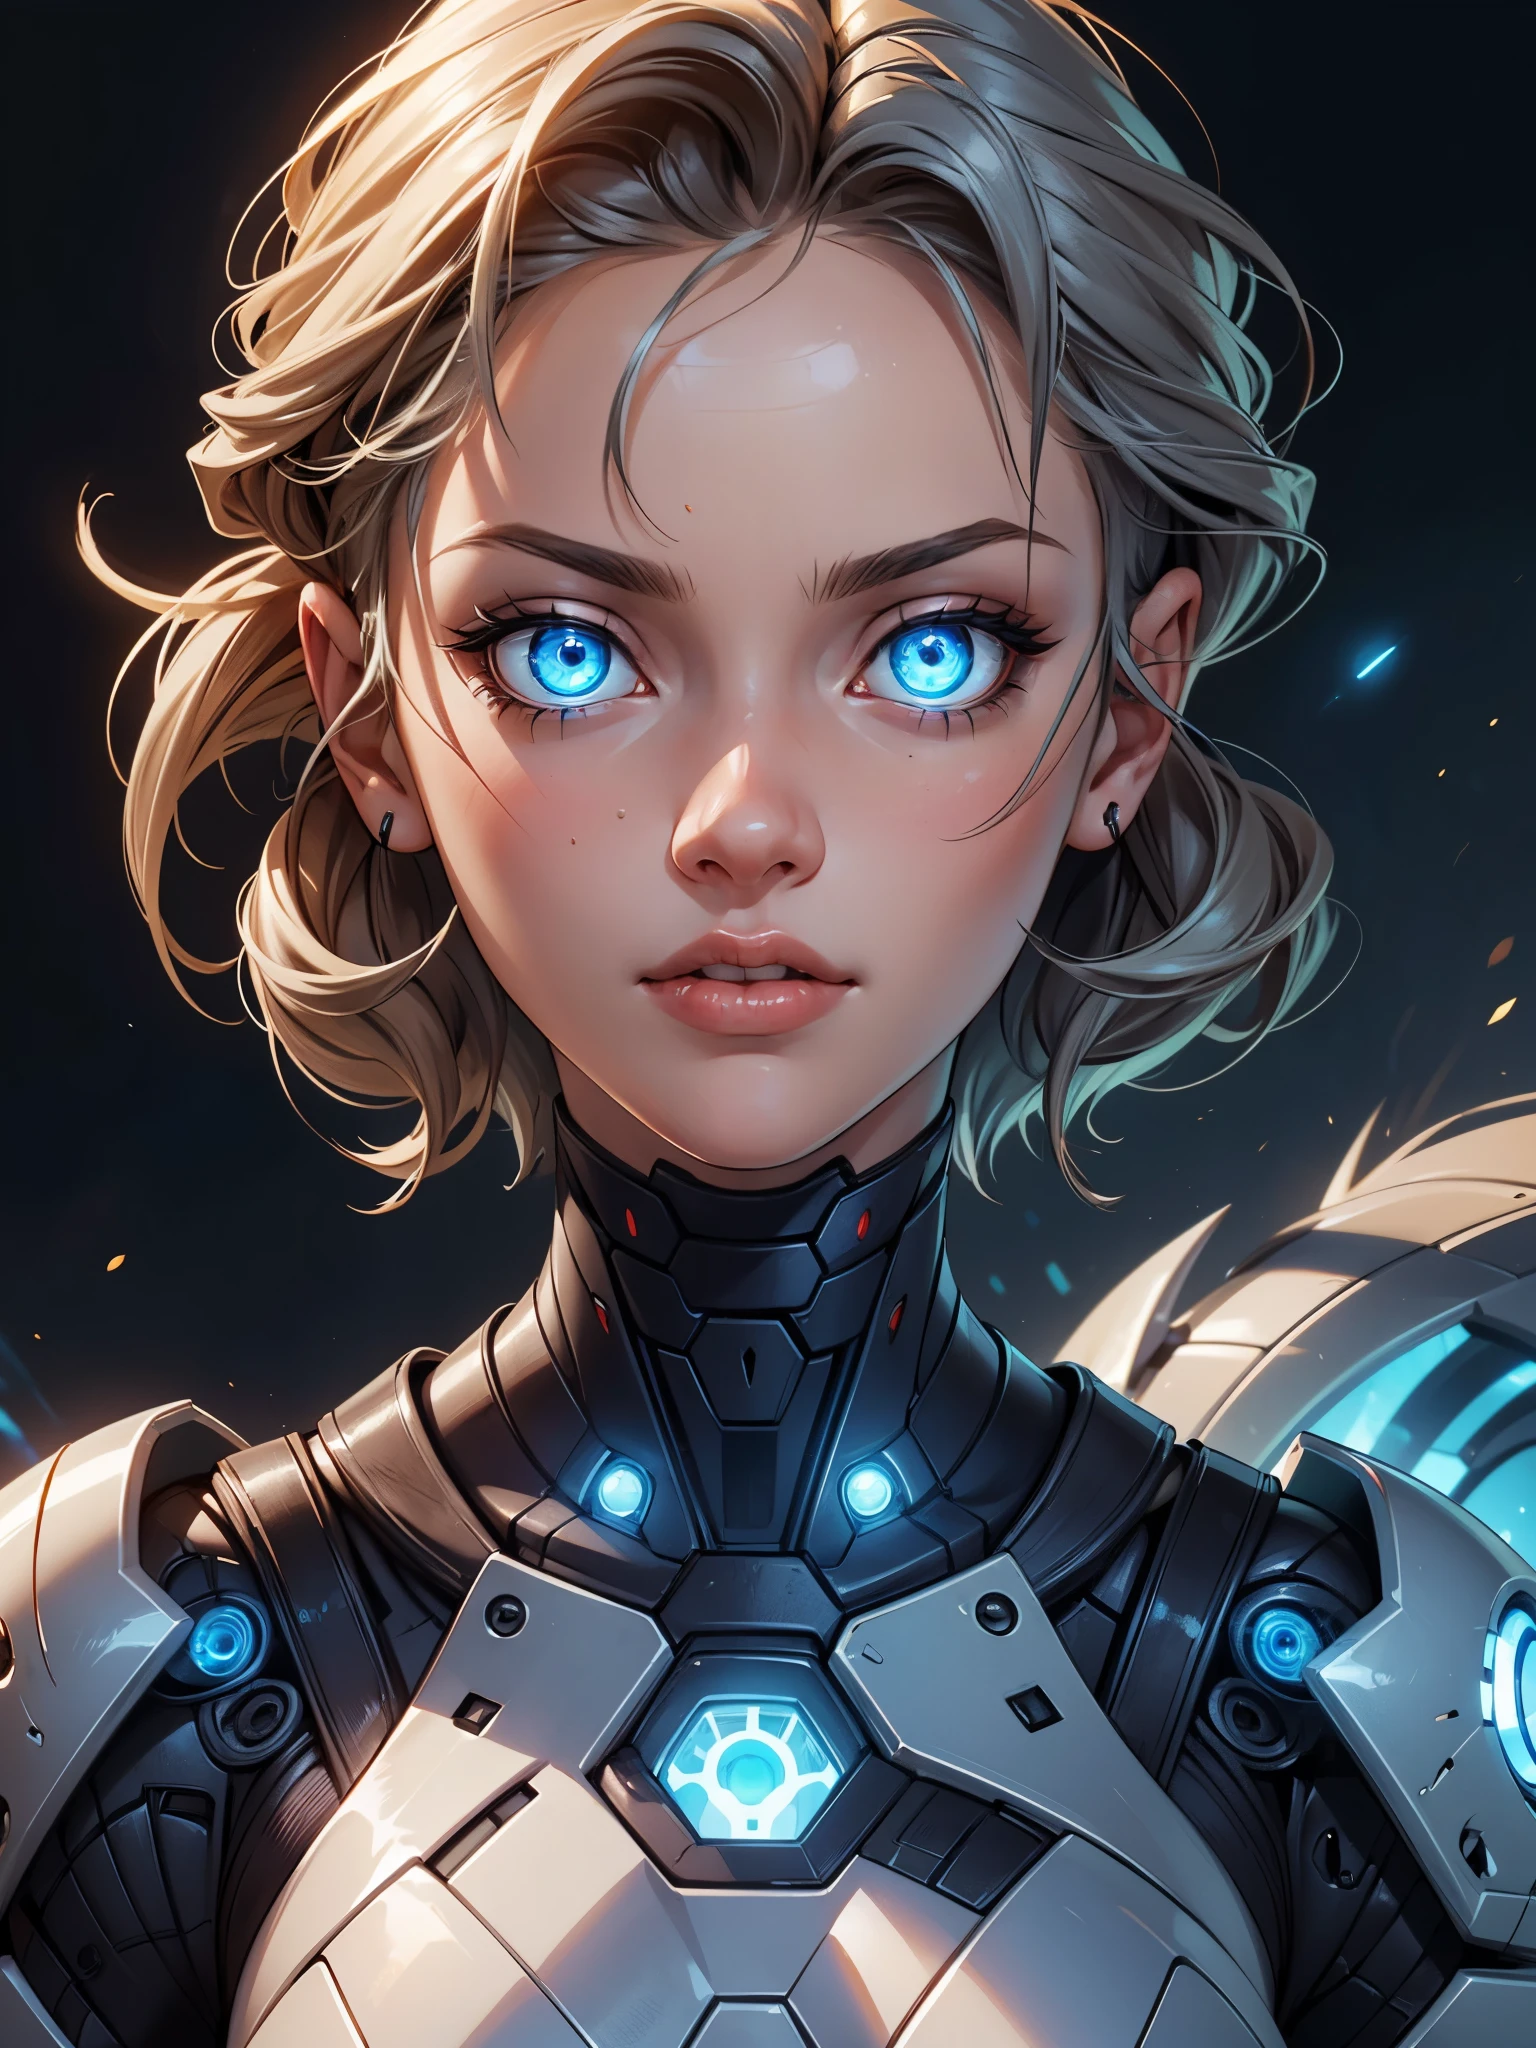 (Obra de arte), (melhor qualidade), 1 garota, cabelo detalhado, garota ciborgue, campo de batalha da guerreira, retrato, close-up, (olhos azuis brilhantes), armadura ciborgue, armadura branca